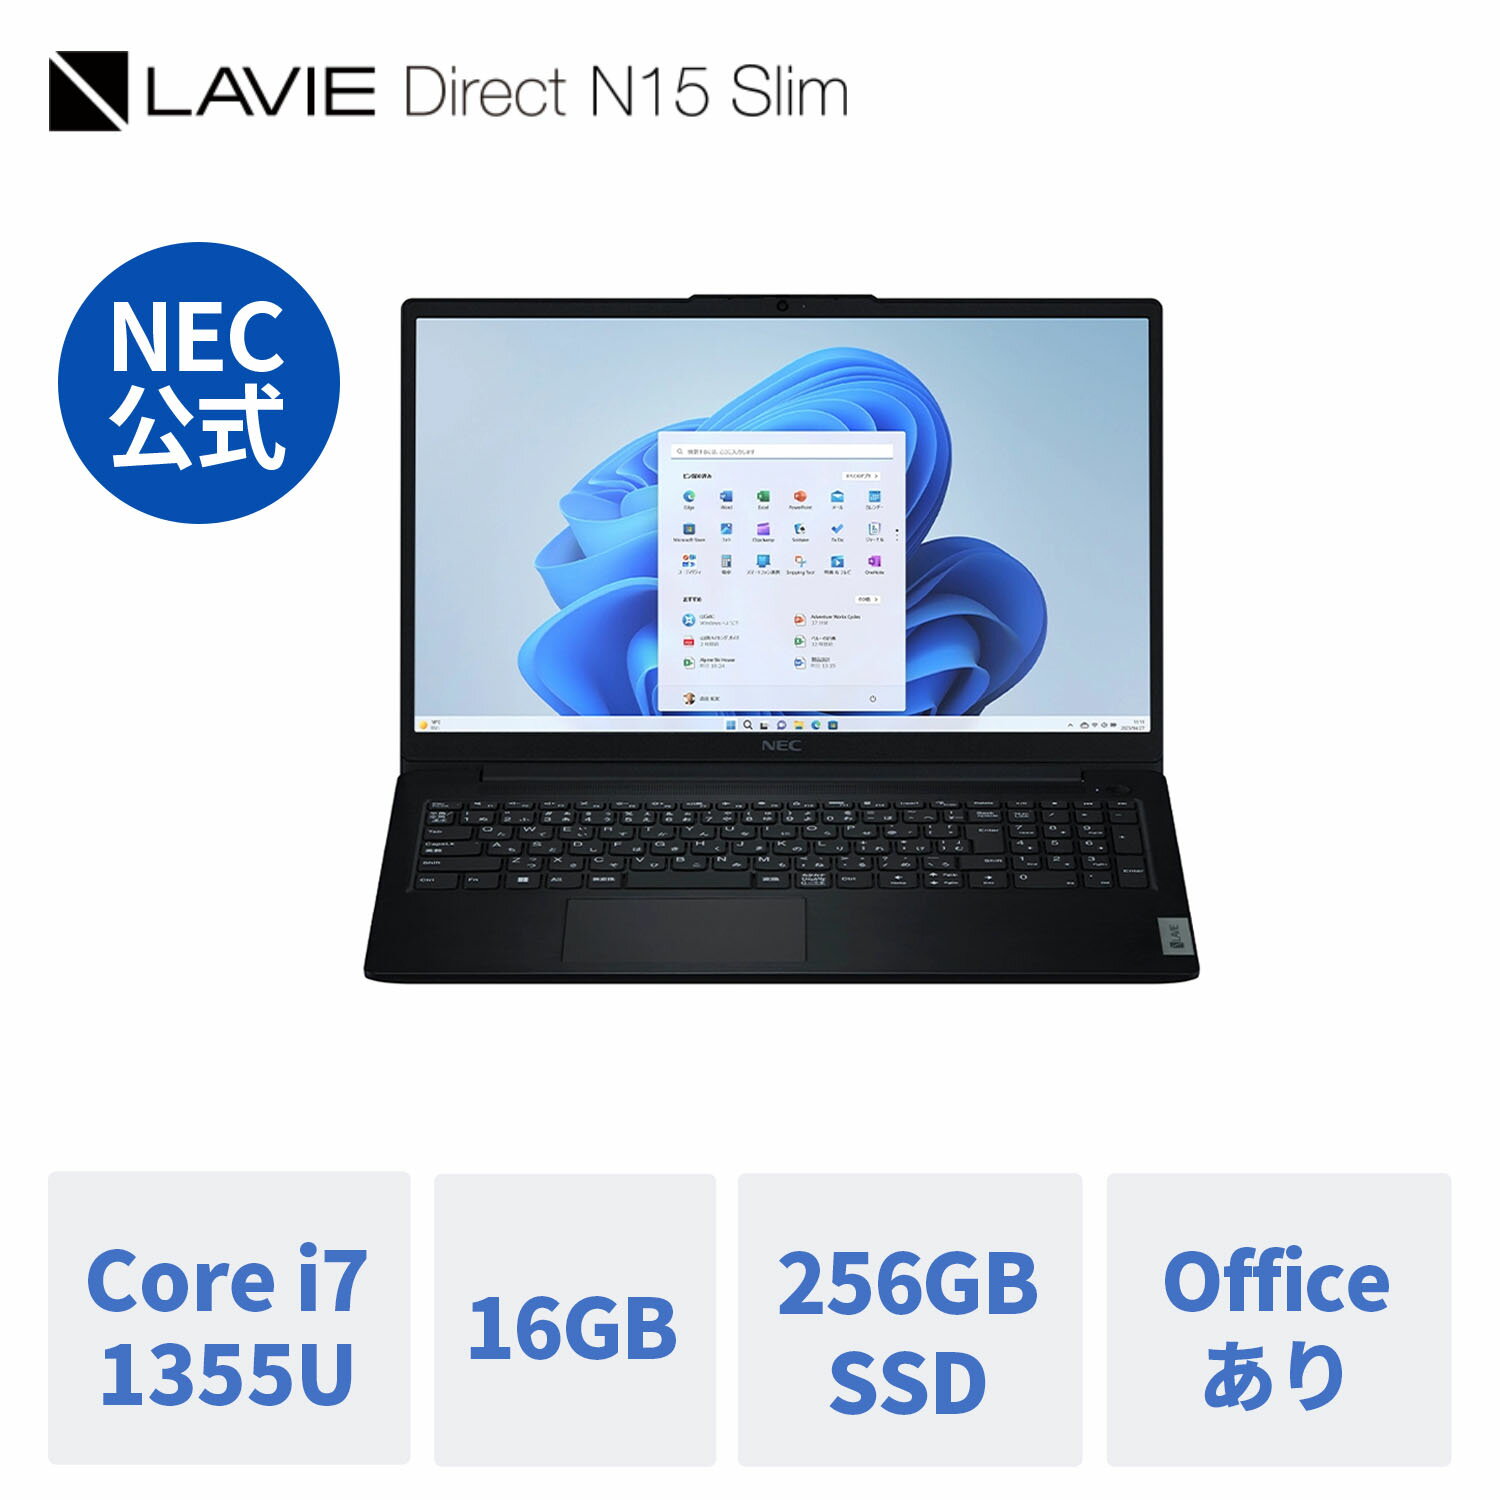 【セール1.0万OFF 最大P37倍】【公式】 新品 NEC ノートパソコン office付き LAVIE Direct N15 Slim 15.6インチ Windows 11 Home Core i7-1355U メモリ 16GB 256GB SSD 1年保証 送料無料 【Norton2】 yxe